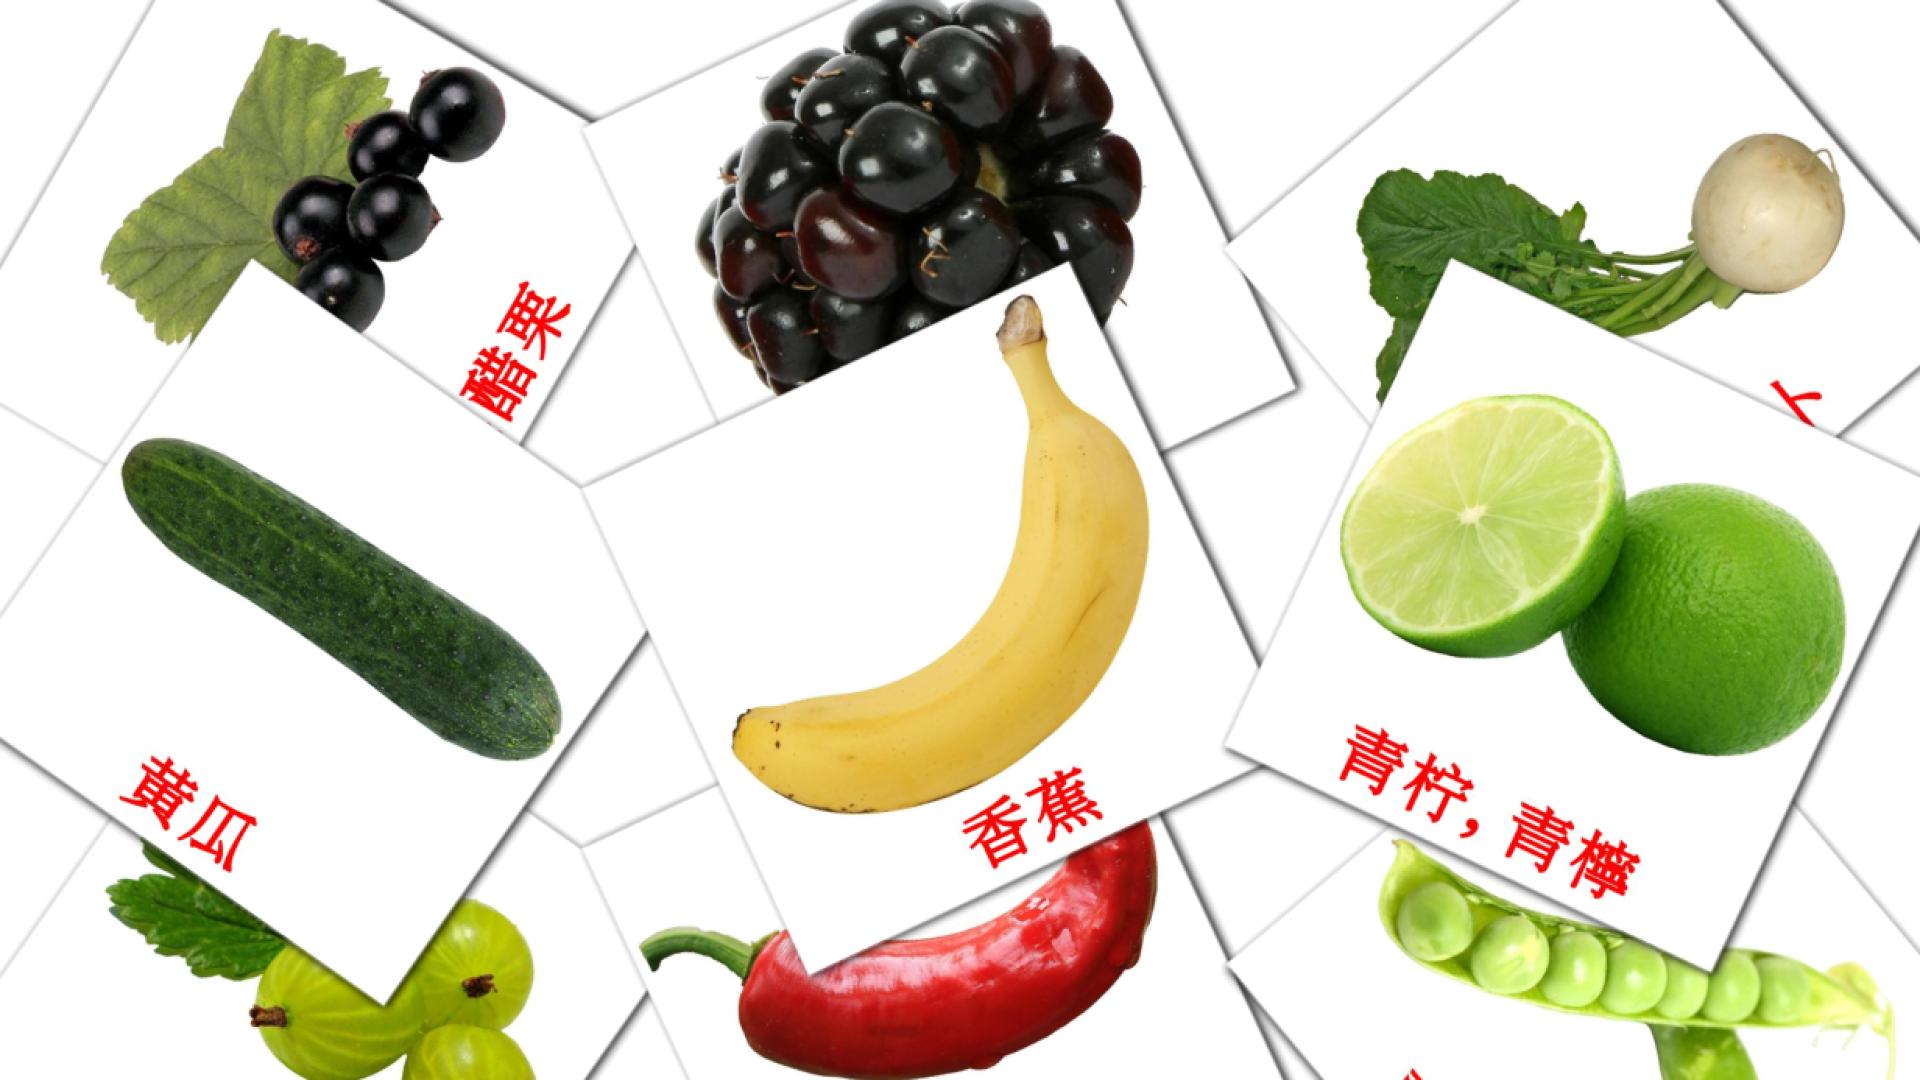 Chinesisch(Vereinfacht) 食物e Vokabelkarteikarten